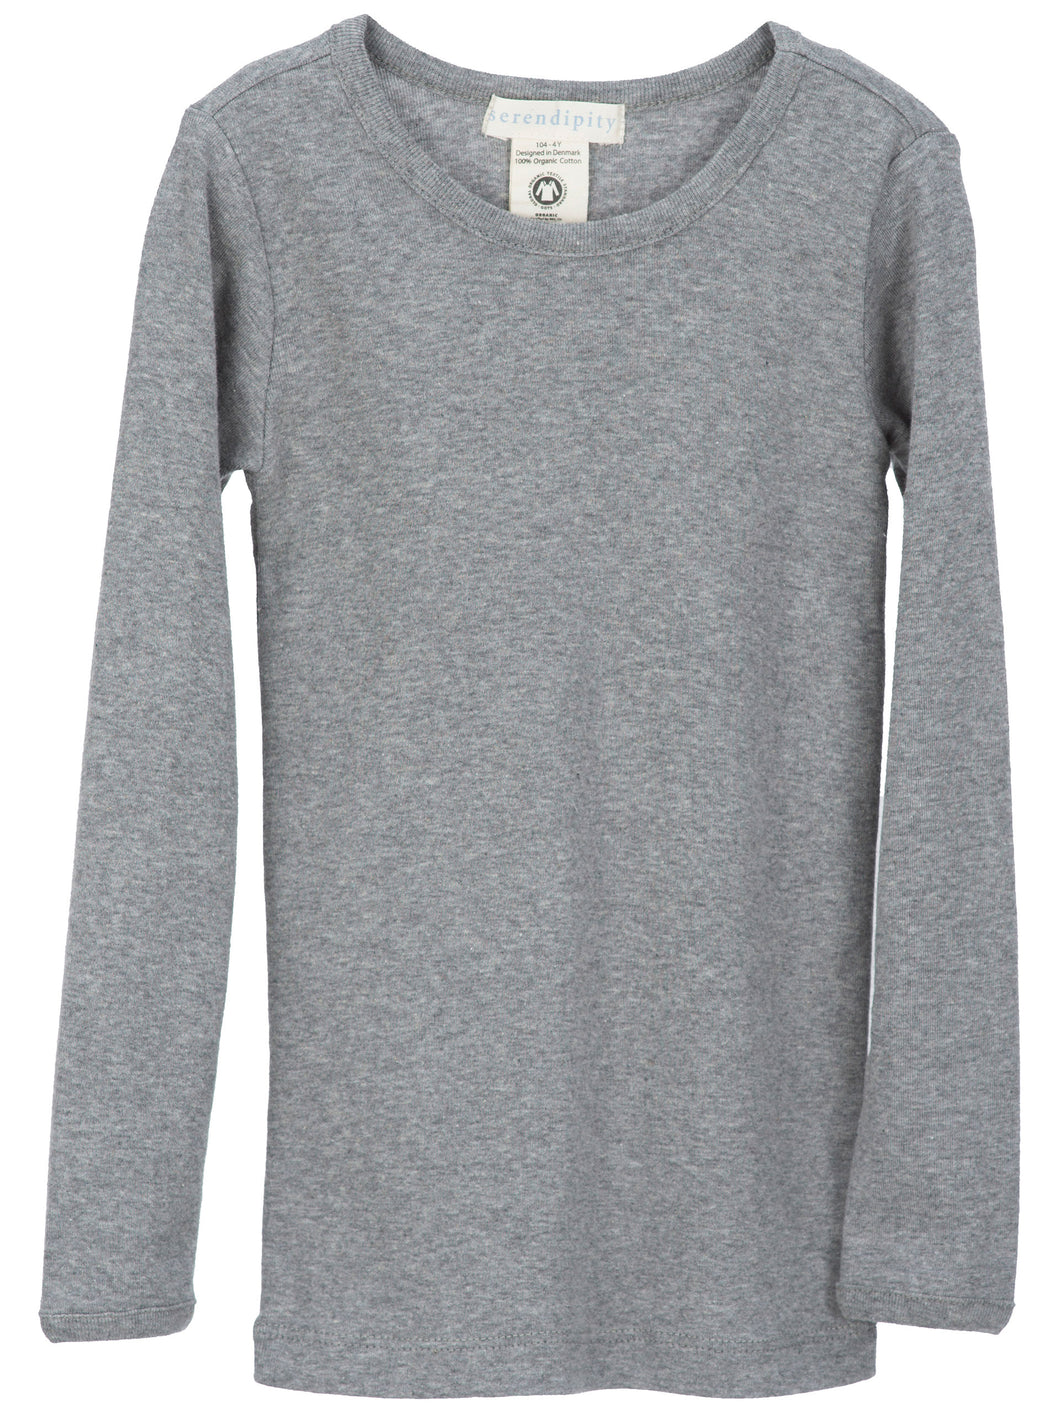 Long Sleeve - Slim fit (Grey)